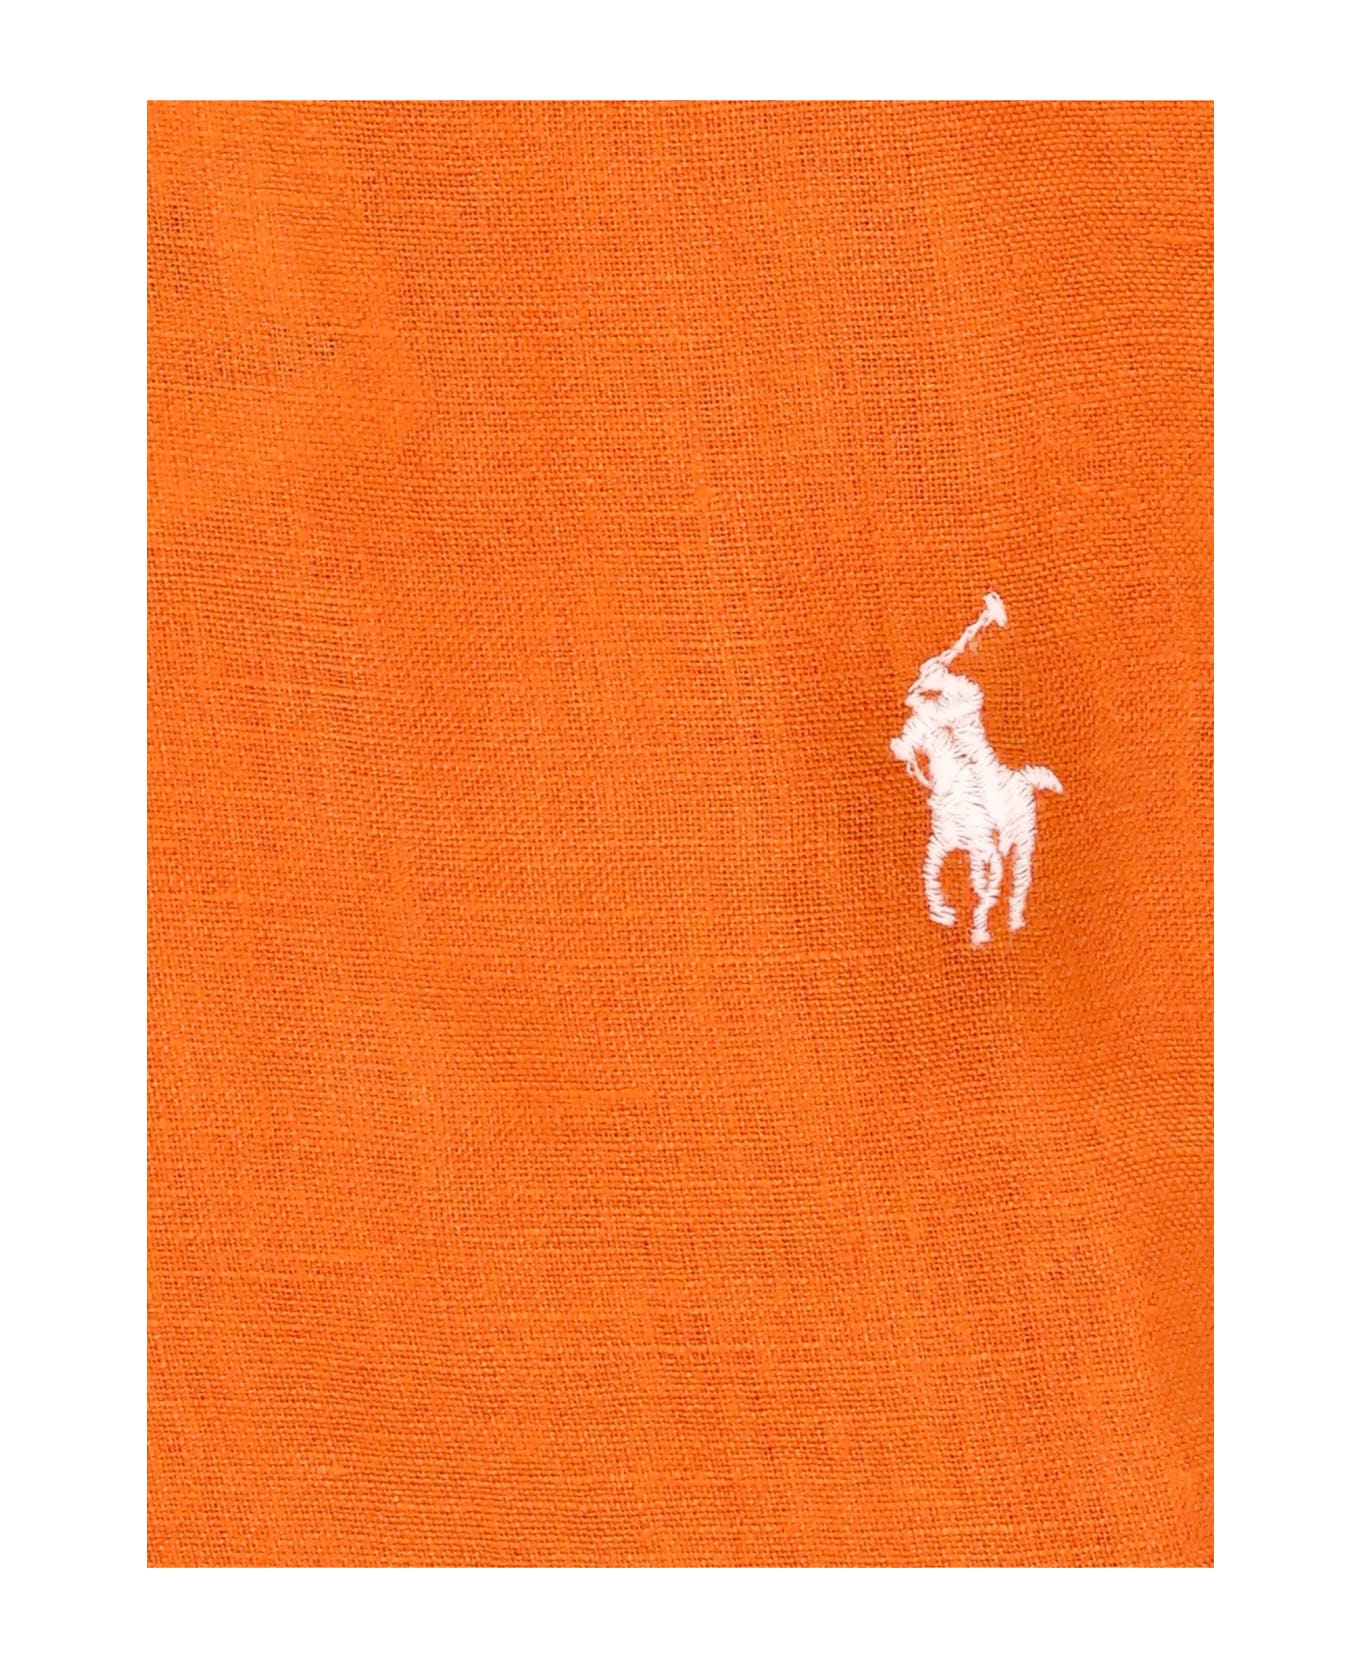 Ralph Lauren Pony Shirt - Orange